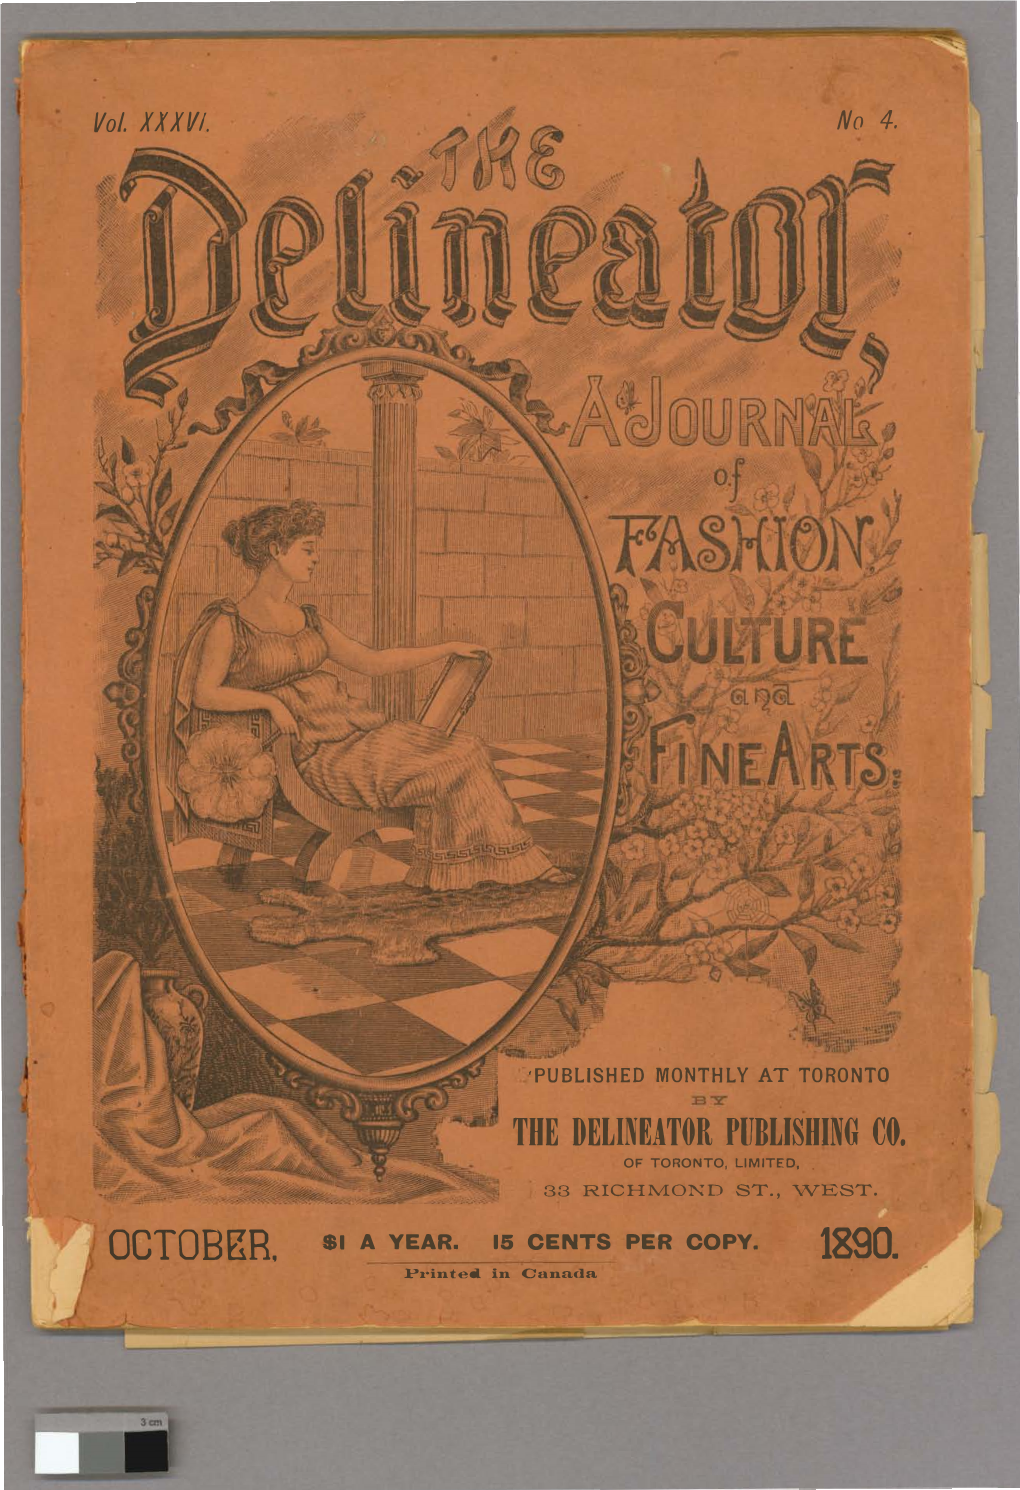 Vol. 36, No. 4, Oct. 1890